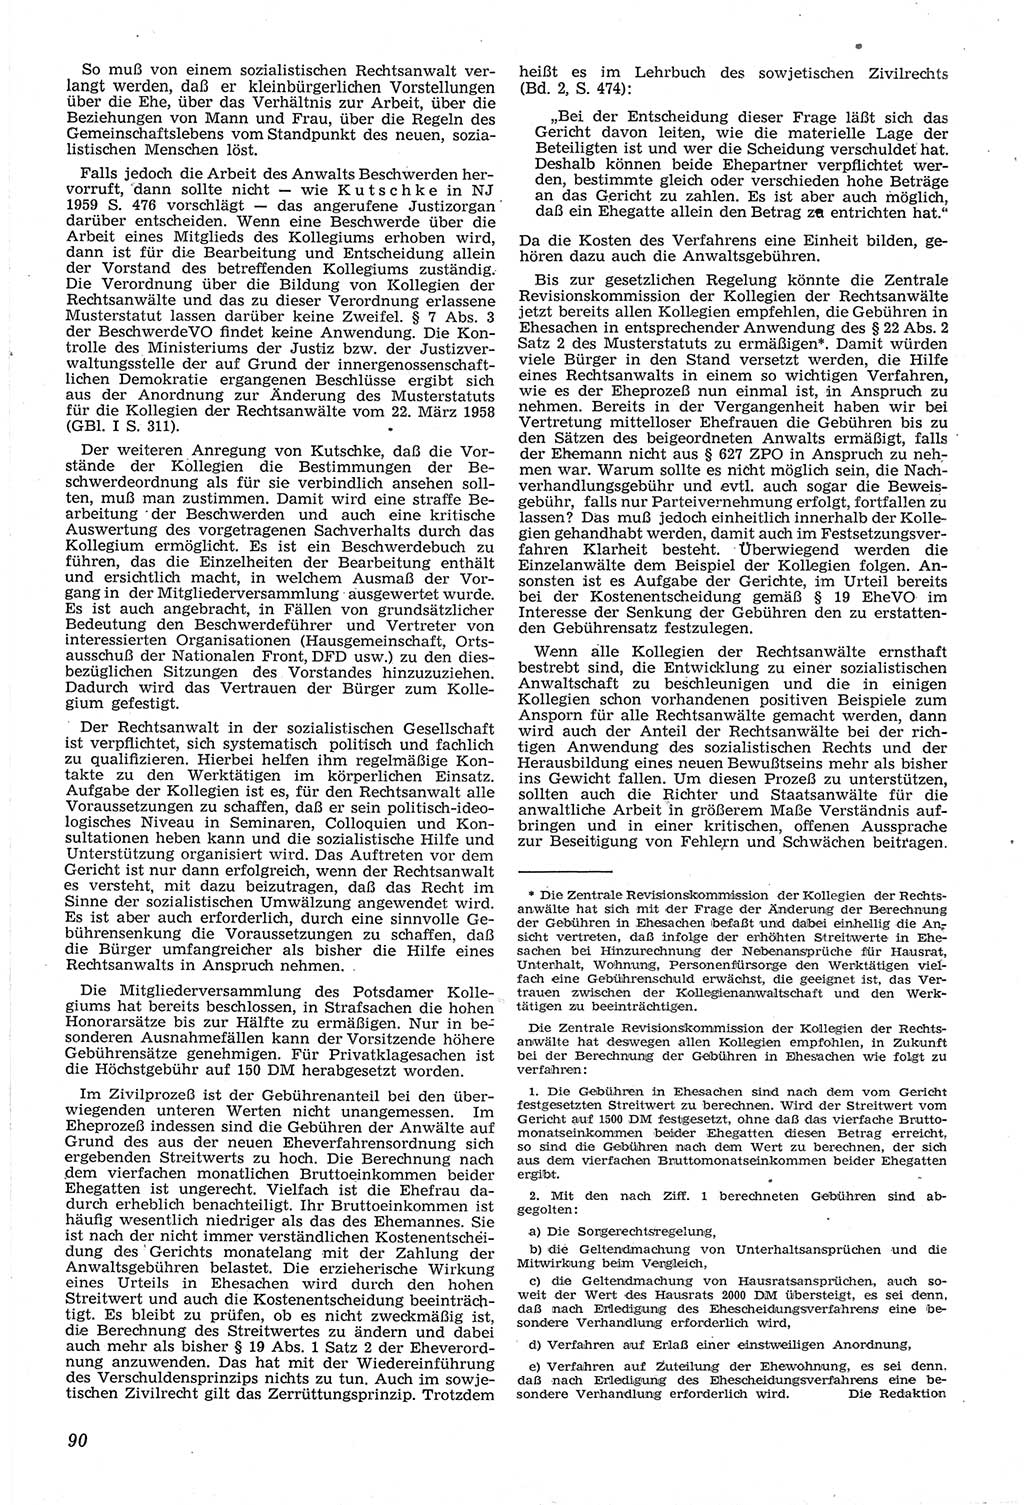 Neue Justiz (NJ), Zeitschrift für Recht und Rechtswissenschaft [Deutsche Demokratische Republik (DDR)], 14. Jahrgang 1960, Seite 90 (NJ DDR 1960, S. 90)